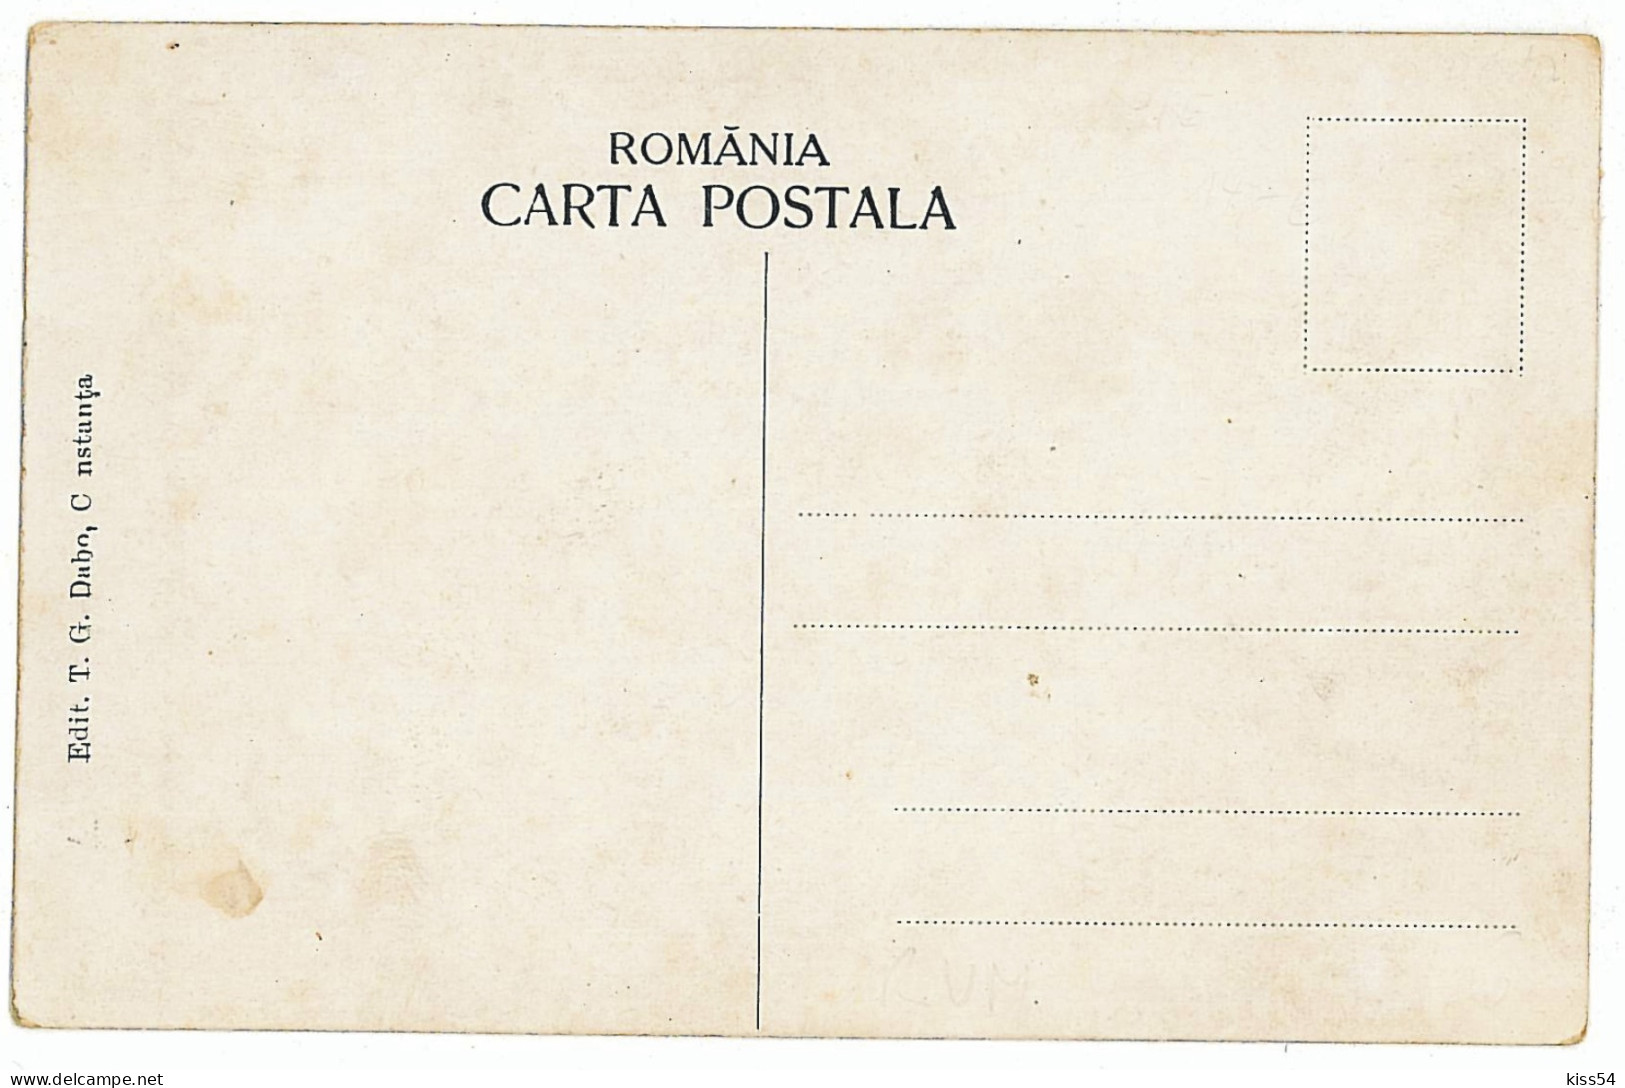 RO 83 - 5538 CONSTANTA, Statuia Lui OVIDIU, Butic Evreiesc IFCOVICI - Old Postcard - Unused - Romania